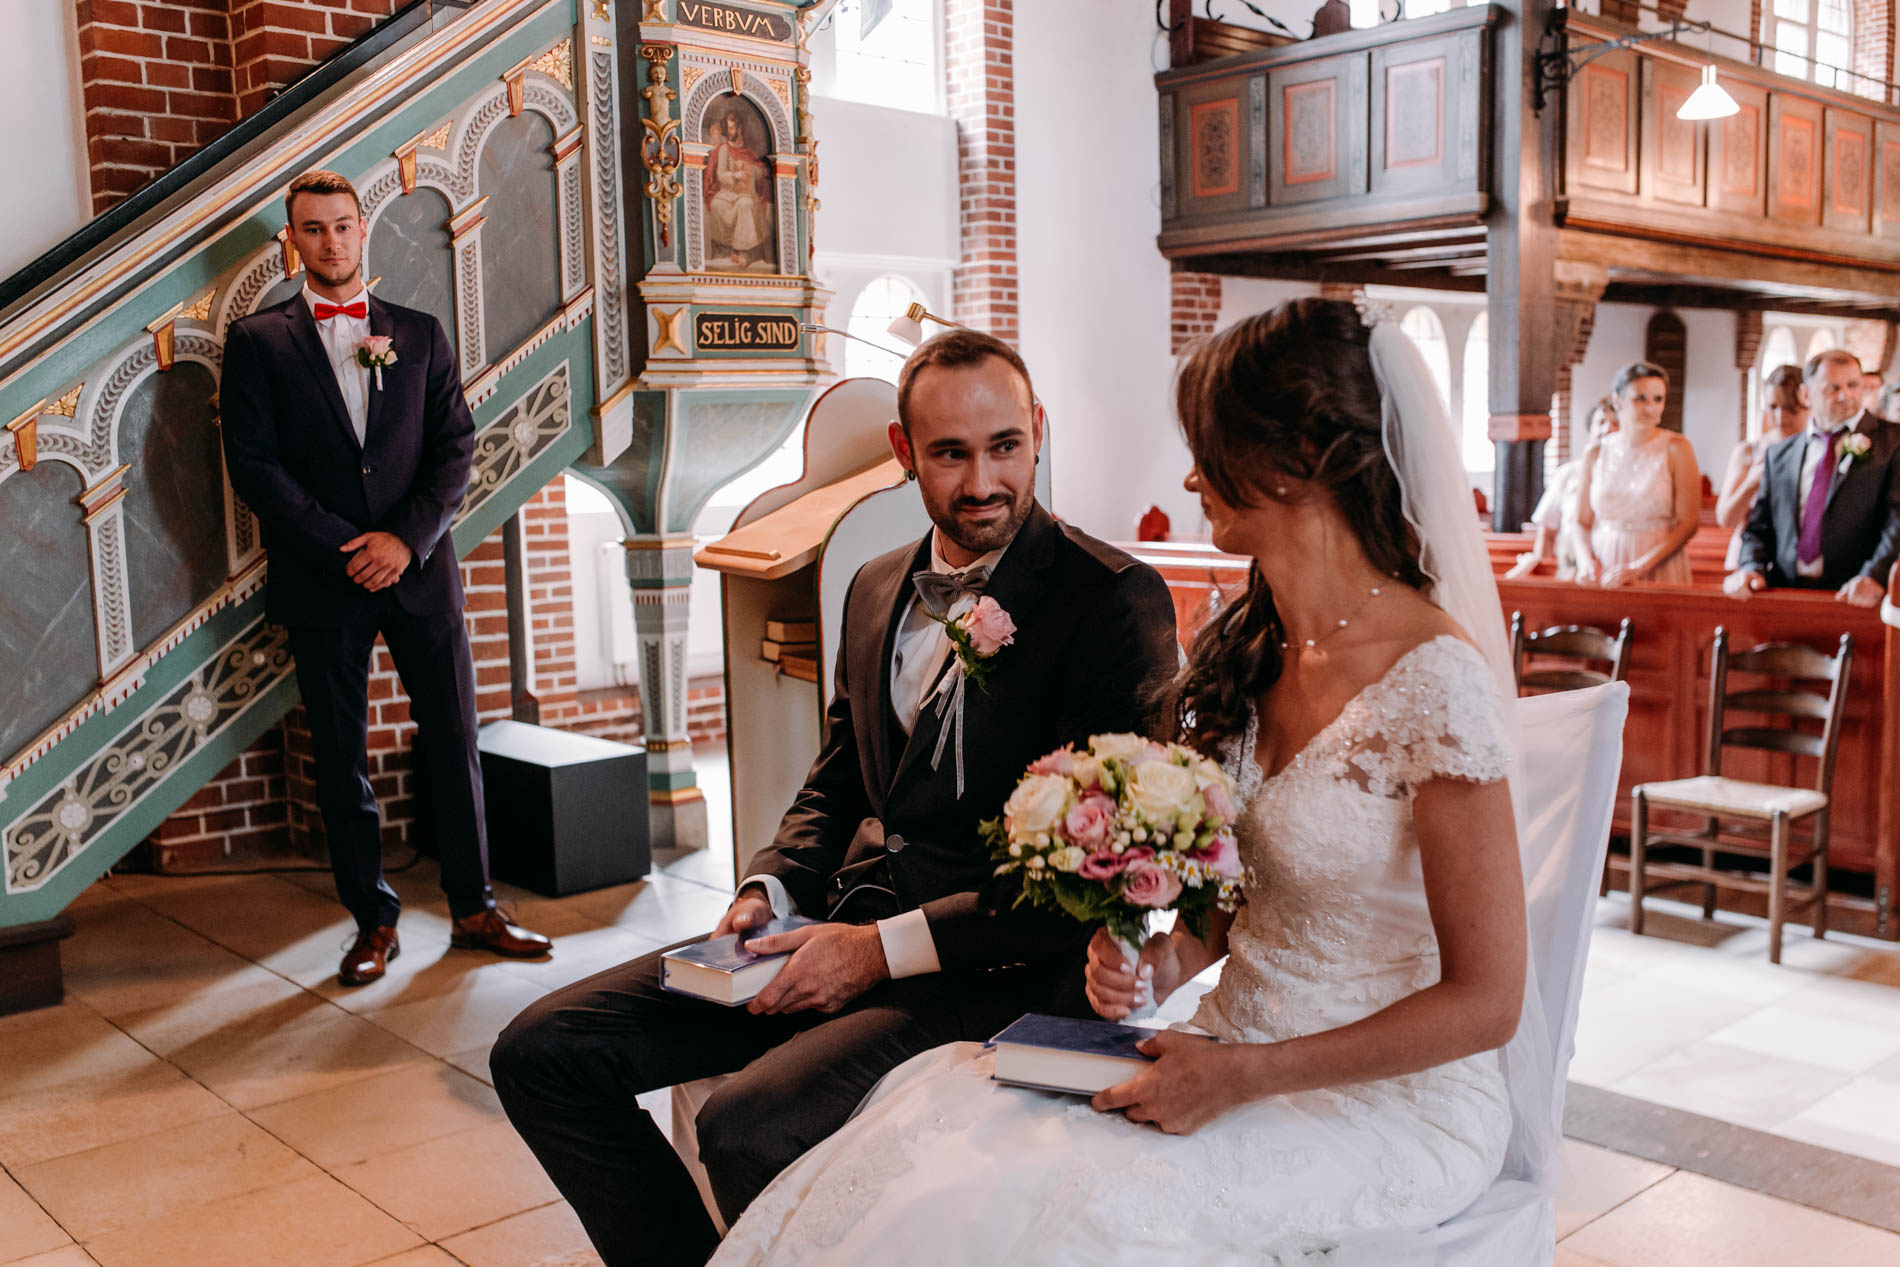 Hochzeitsfotograf für kreative und emotionale Hochzeitsportraits & Hochzeitsreportagen in Jork